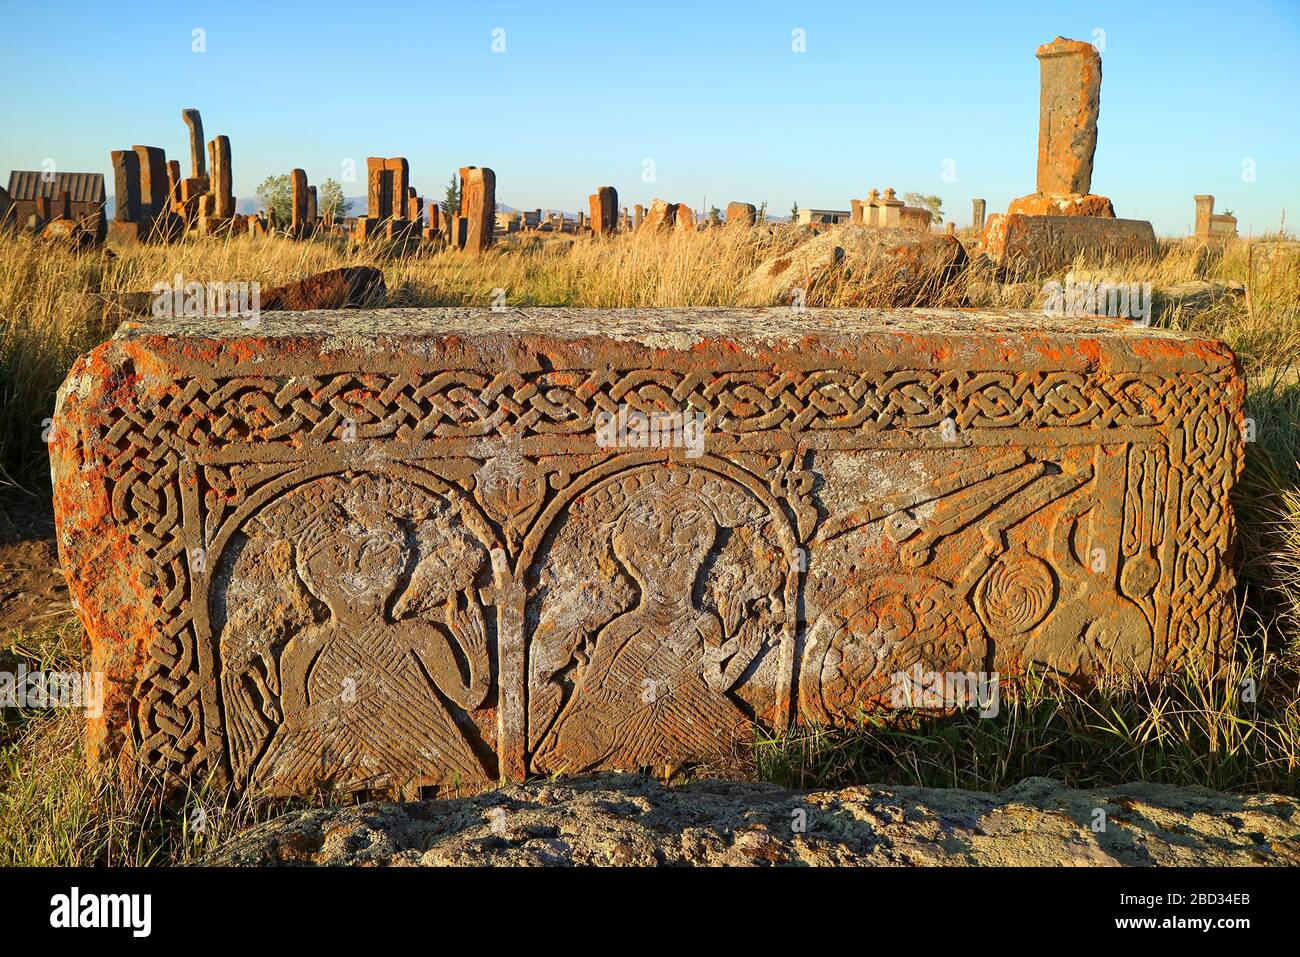 Einer der herausragenden Grabsteine auf dem Friedhof Noratus, dem ältesten Armenfriedhof, der eine Fläche von 7 Hektar im Dorf Noratus in Armenien umfasst Stockfoto